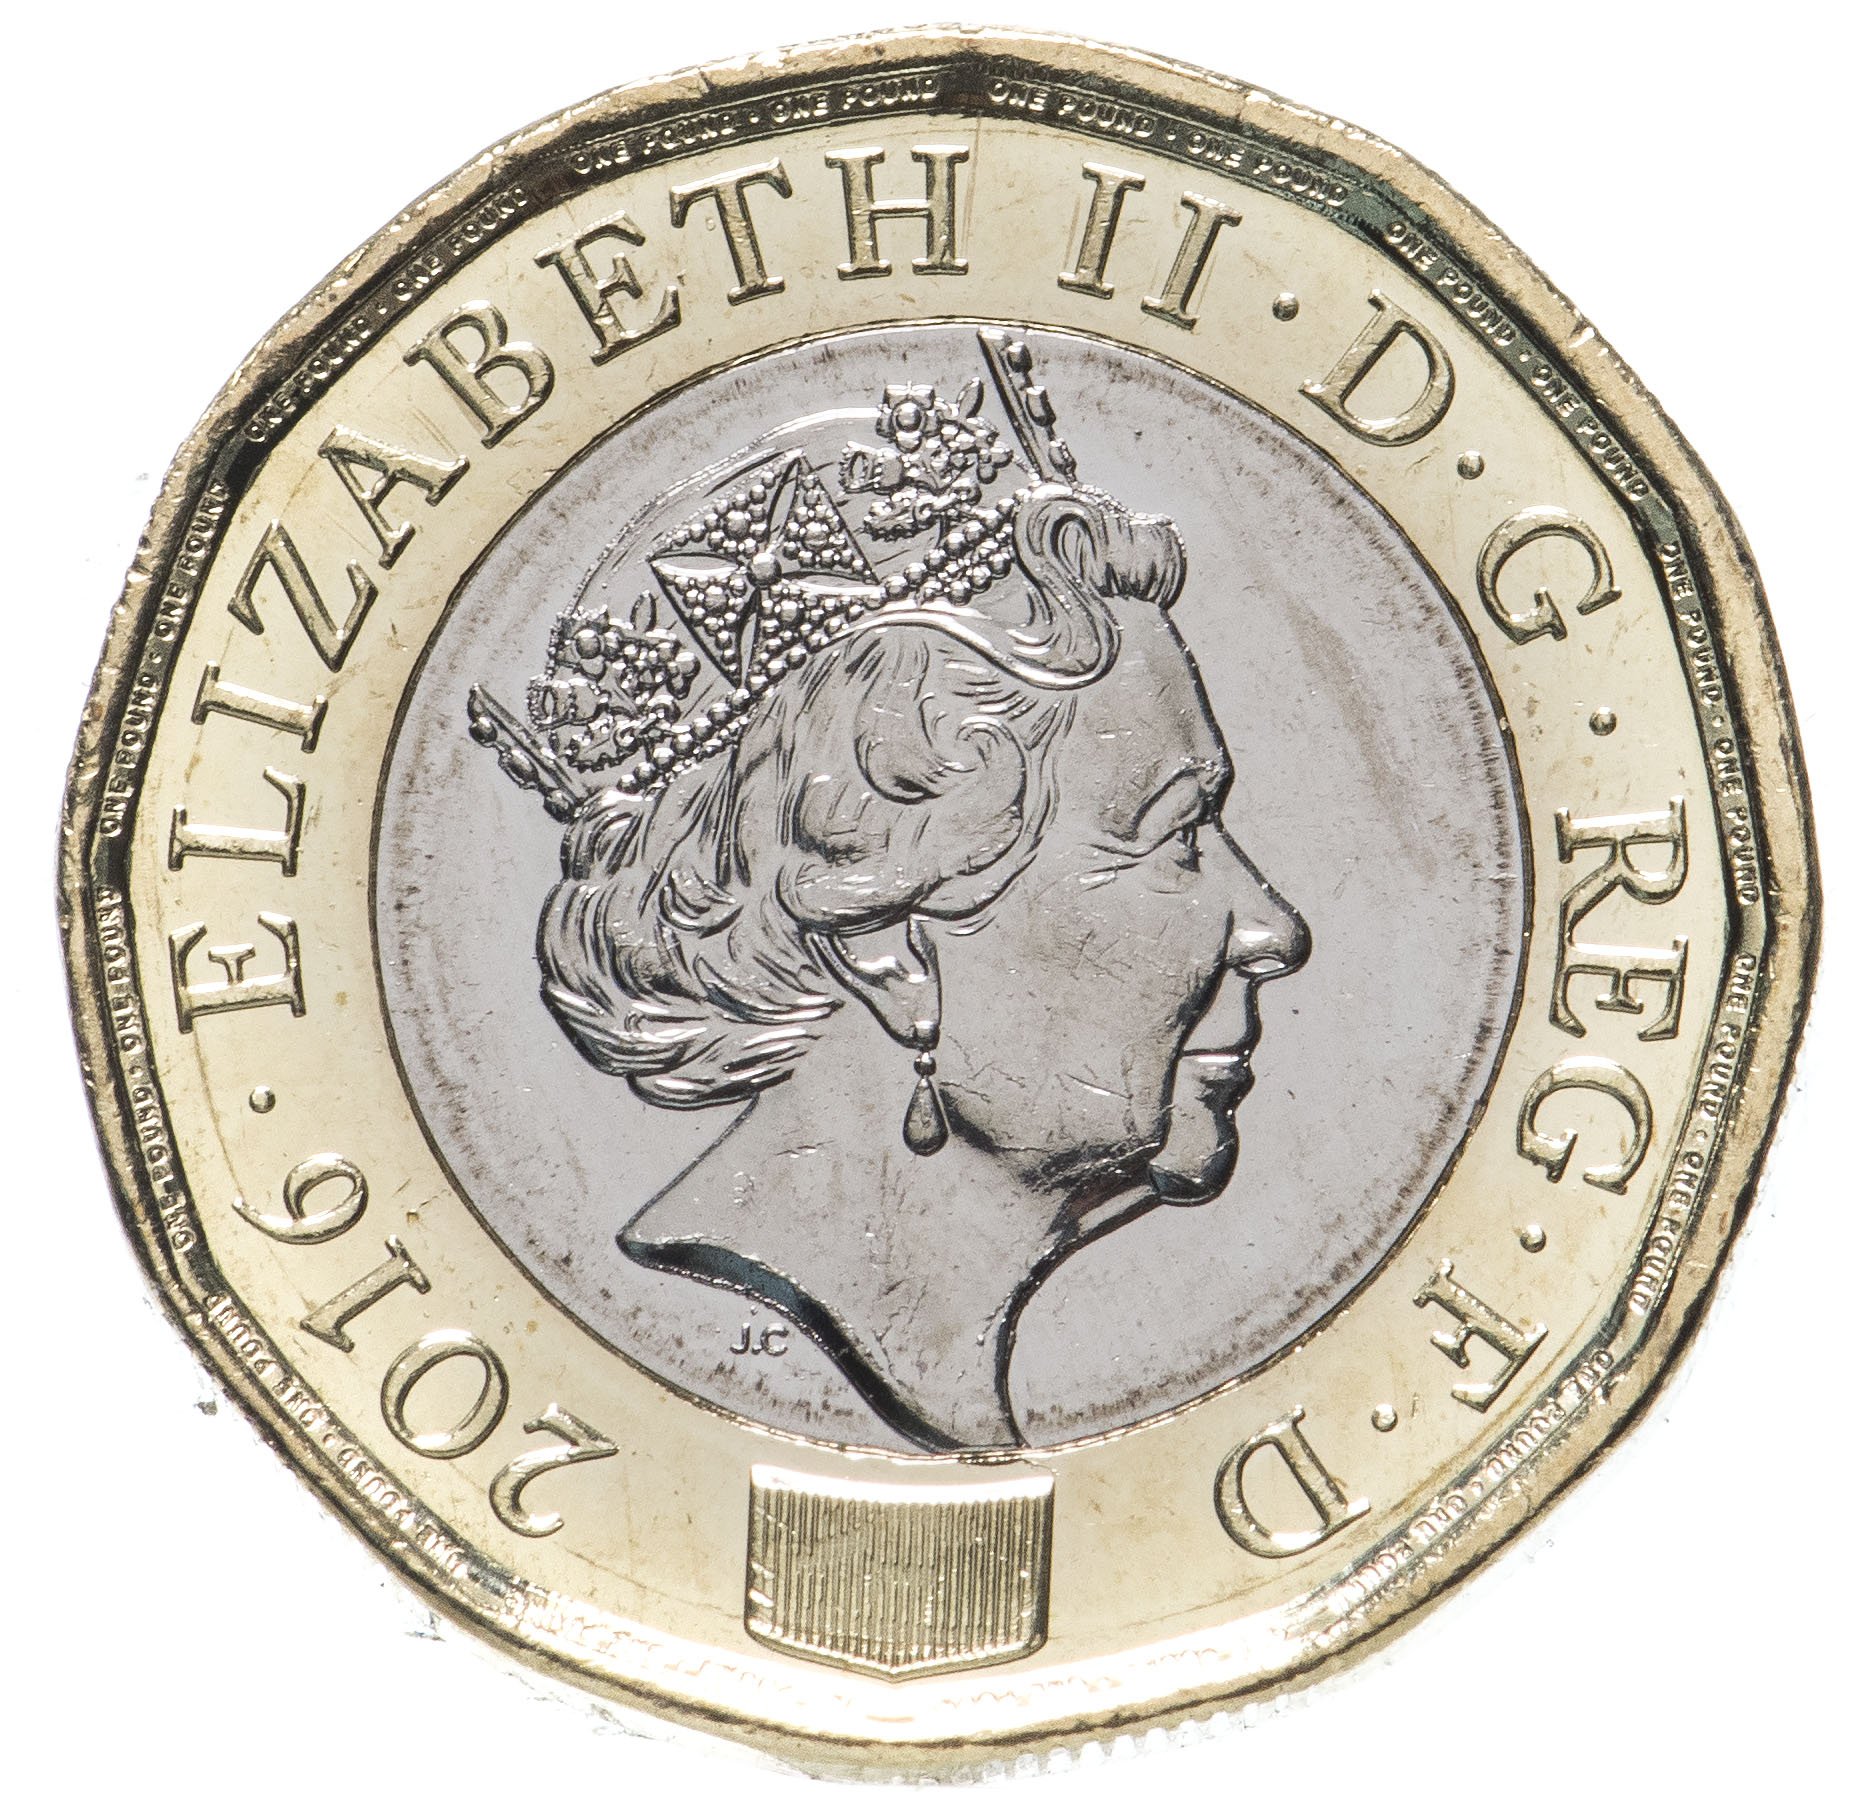 First coins. 1 Фунт монета Англия. Один фунт стерлингов монеты Великобритании. 1 Фунт Стерлинг монета. 1 Фунт 2016 Великобритания монета.